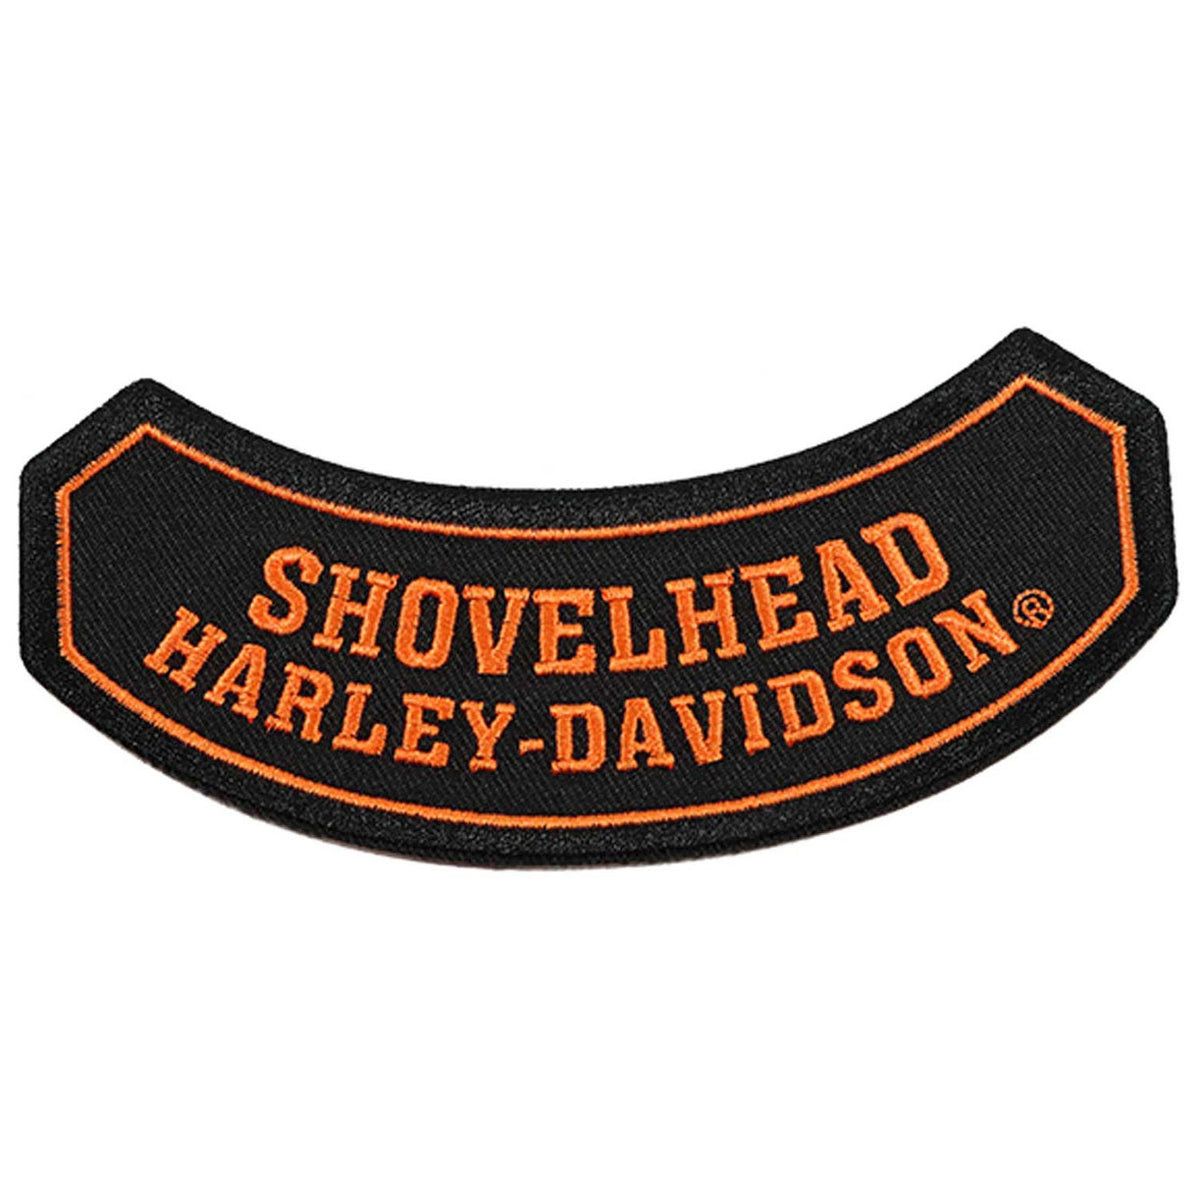 Harley-Davidson 3.5 in. Embroidered Burnin' Rubber Emblem Sew-On Patch -  Black, Harley Davidson